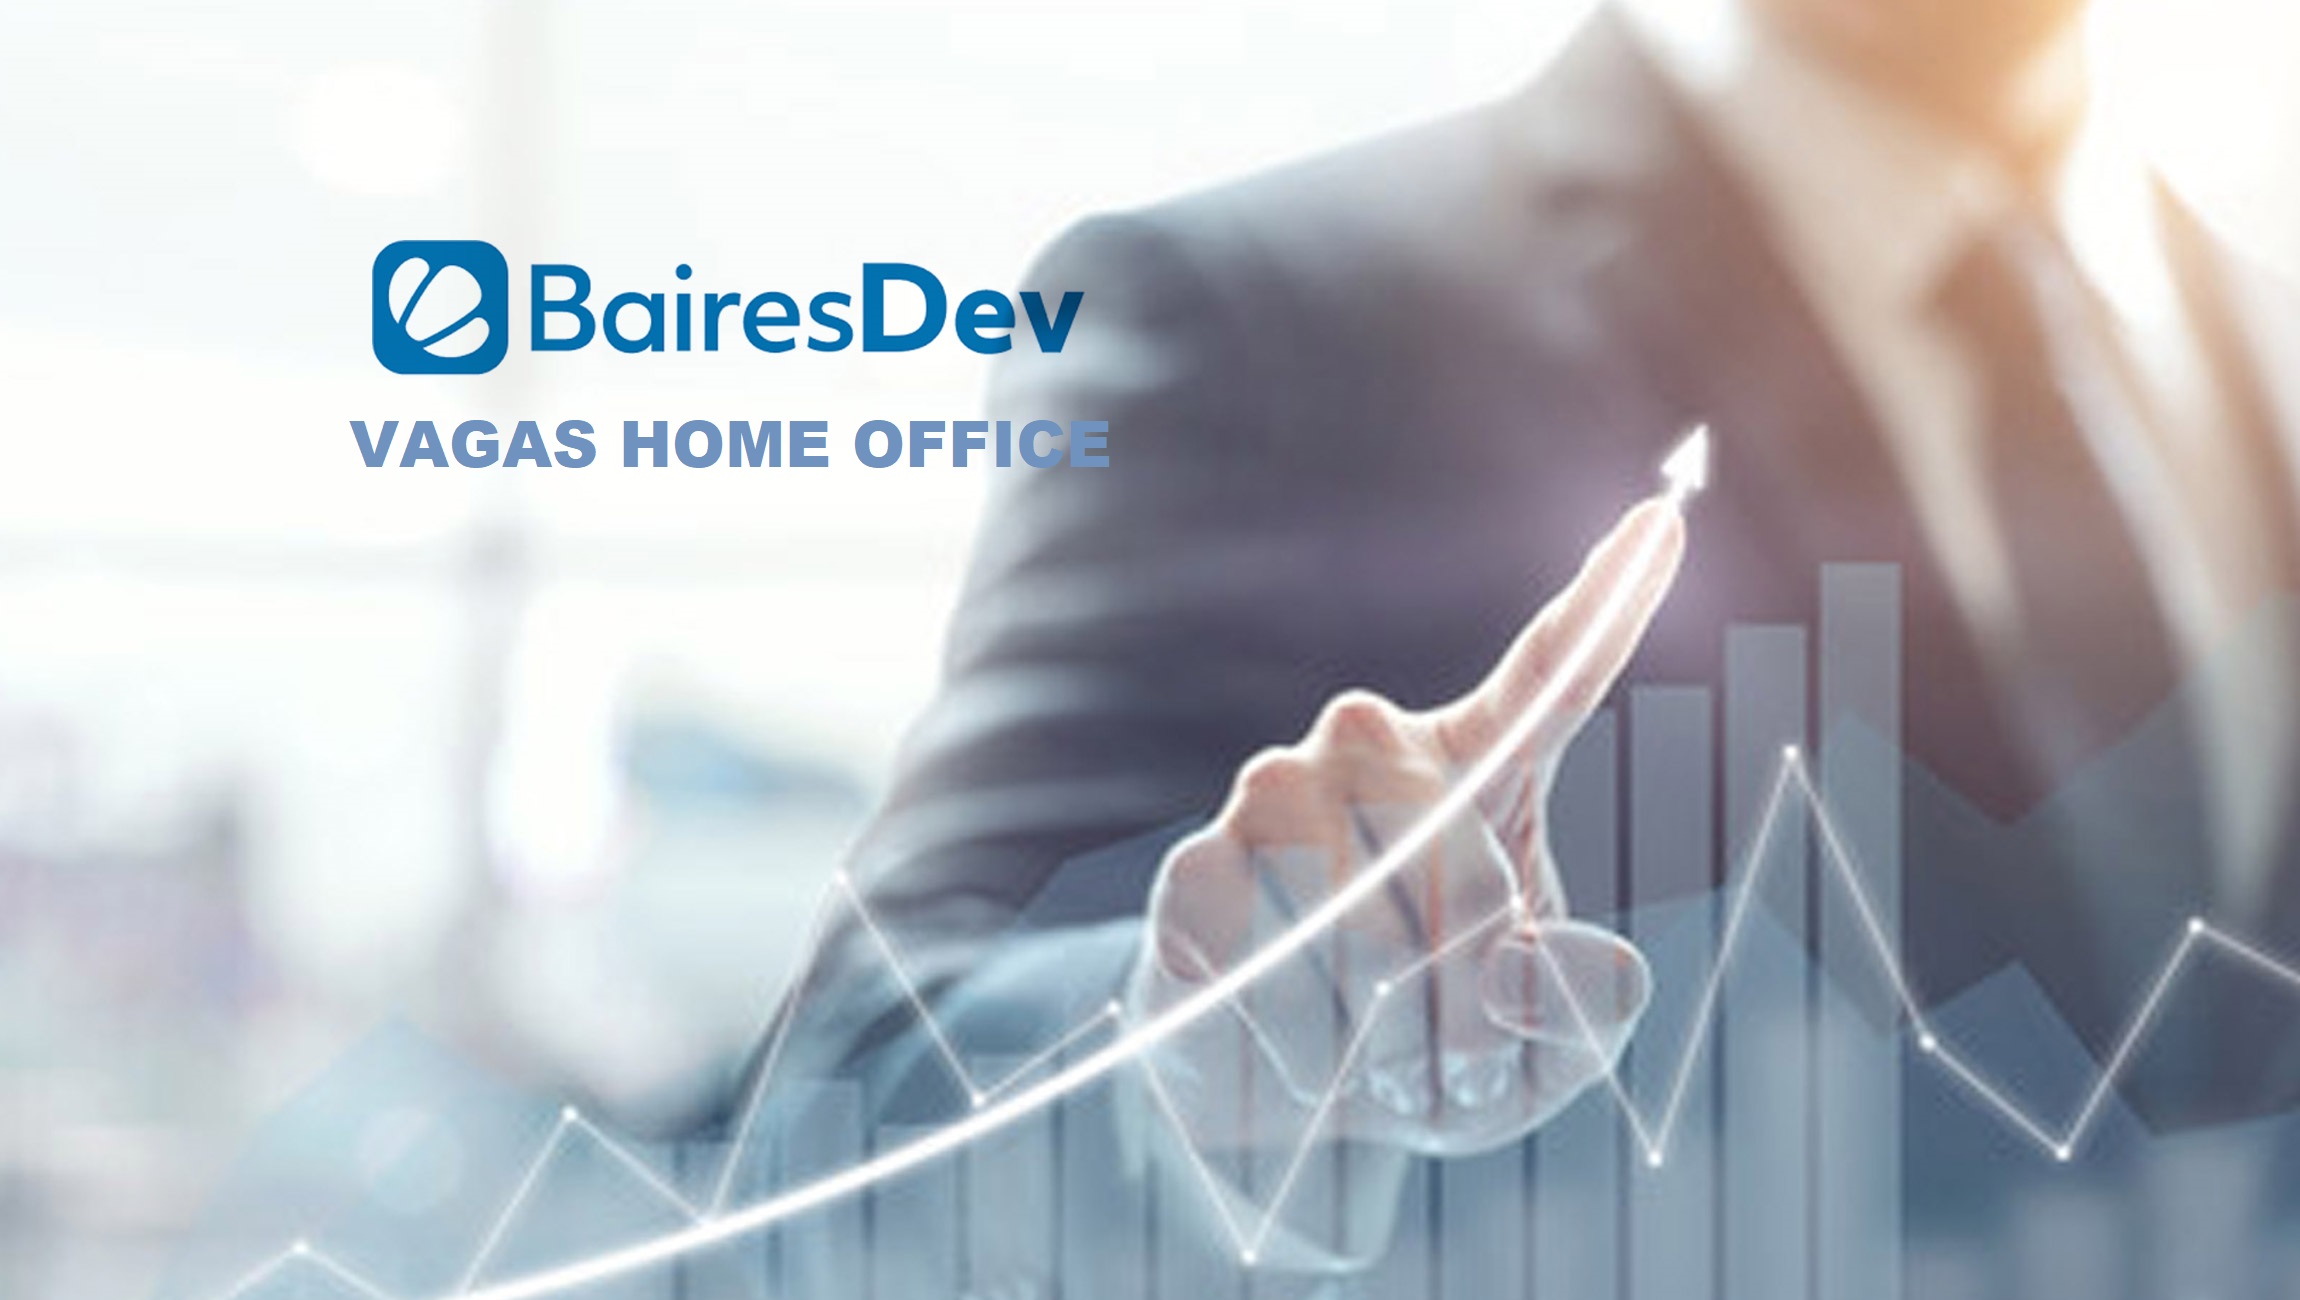 BairesDev abre 10 Vagas para Operador de Telemarketing 100% Home Office